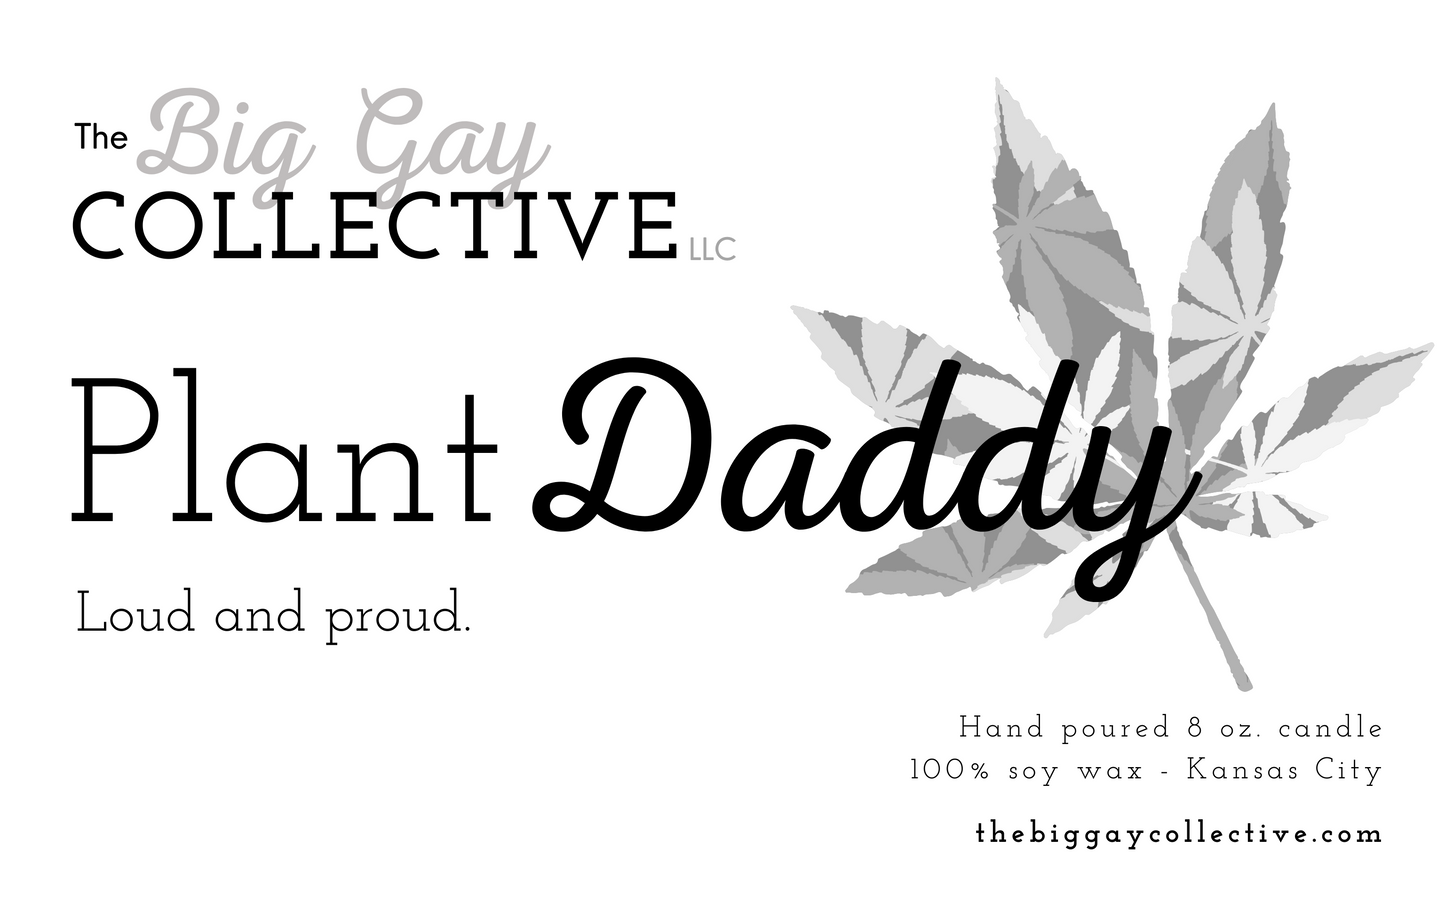 Plant Daddy